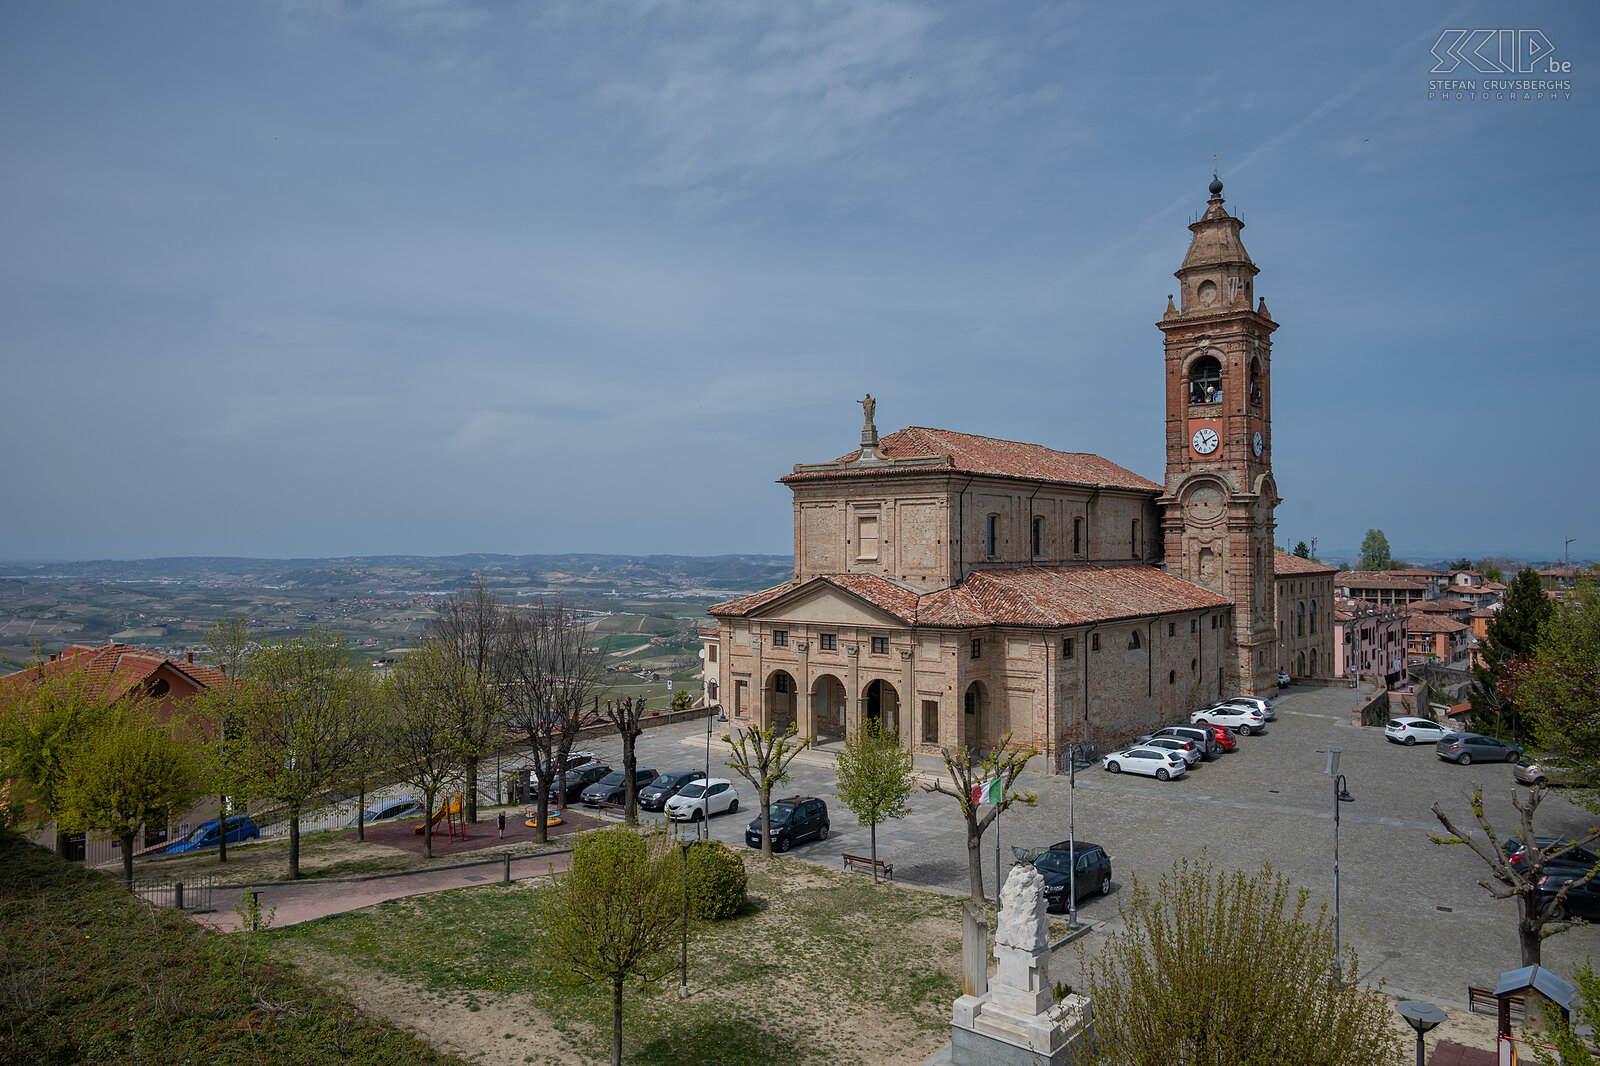 Diano d'Alba - Chiesa di San Giovanni Battista Diano d'Alba ligt vlakbij Grinzane Cavour en bovenaan de kerk in dit dorpje heb je een 365° graden panorama zicht op de regio. Stefan Cruysberghs